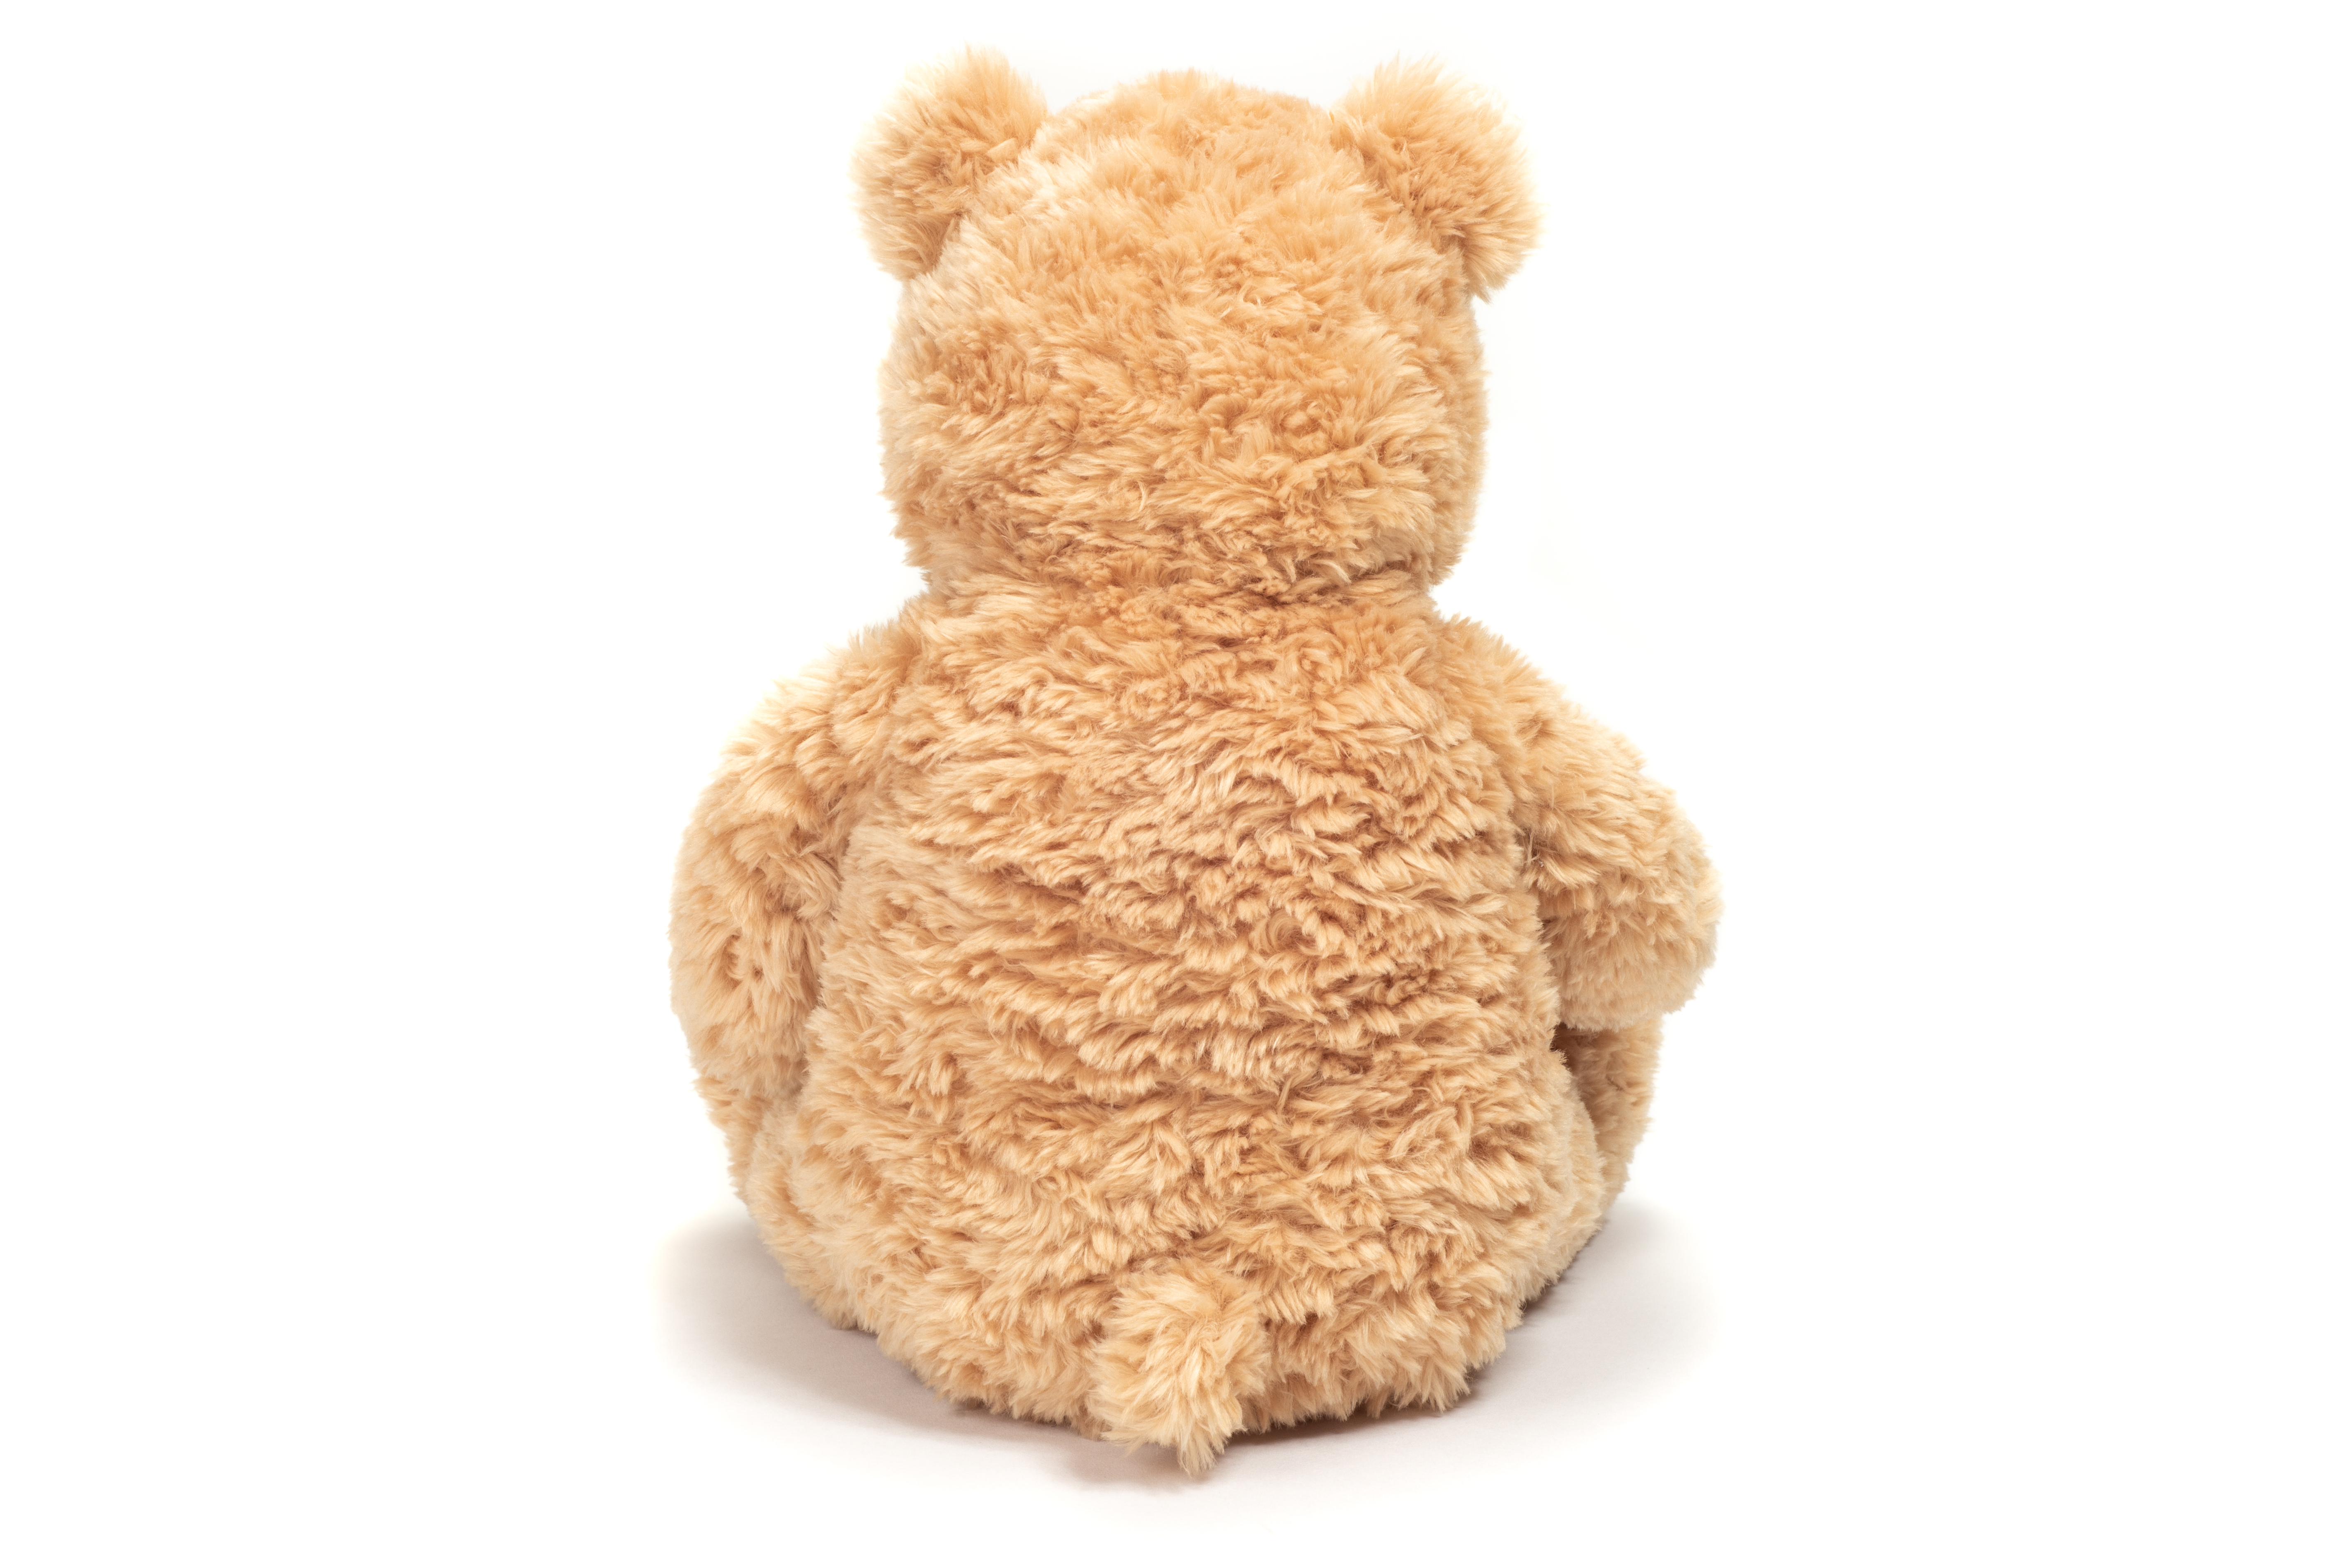 HERMANN 34 cm Teddy TEDDY sandfarben Plüschtier